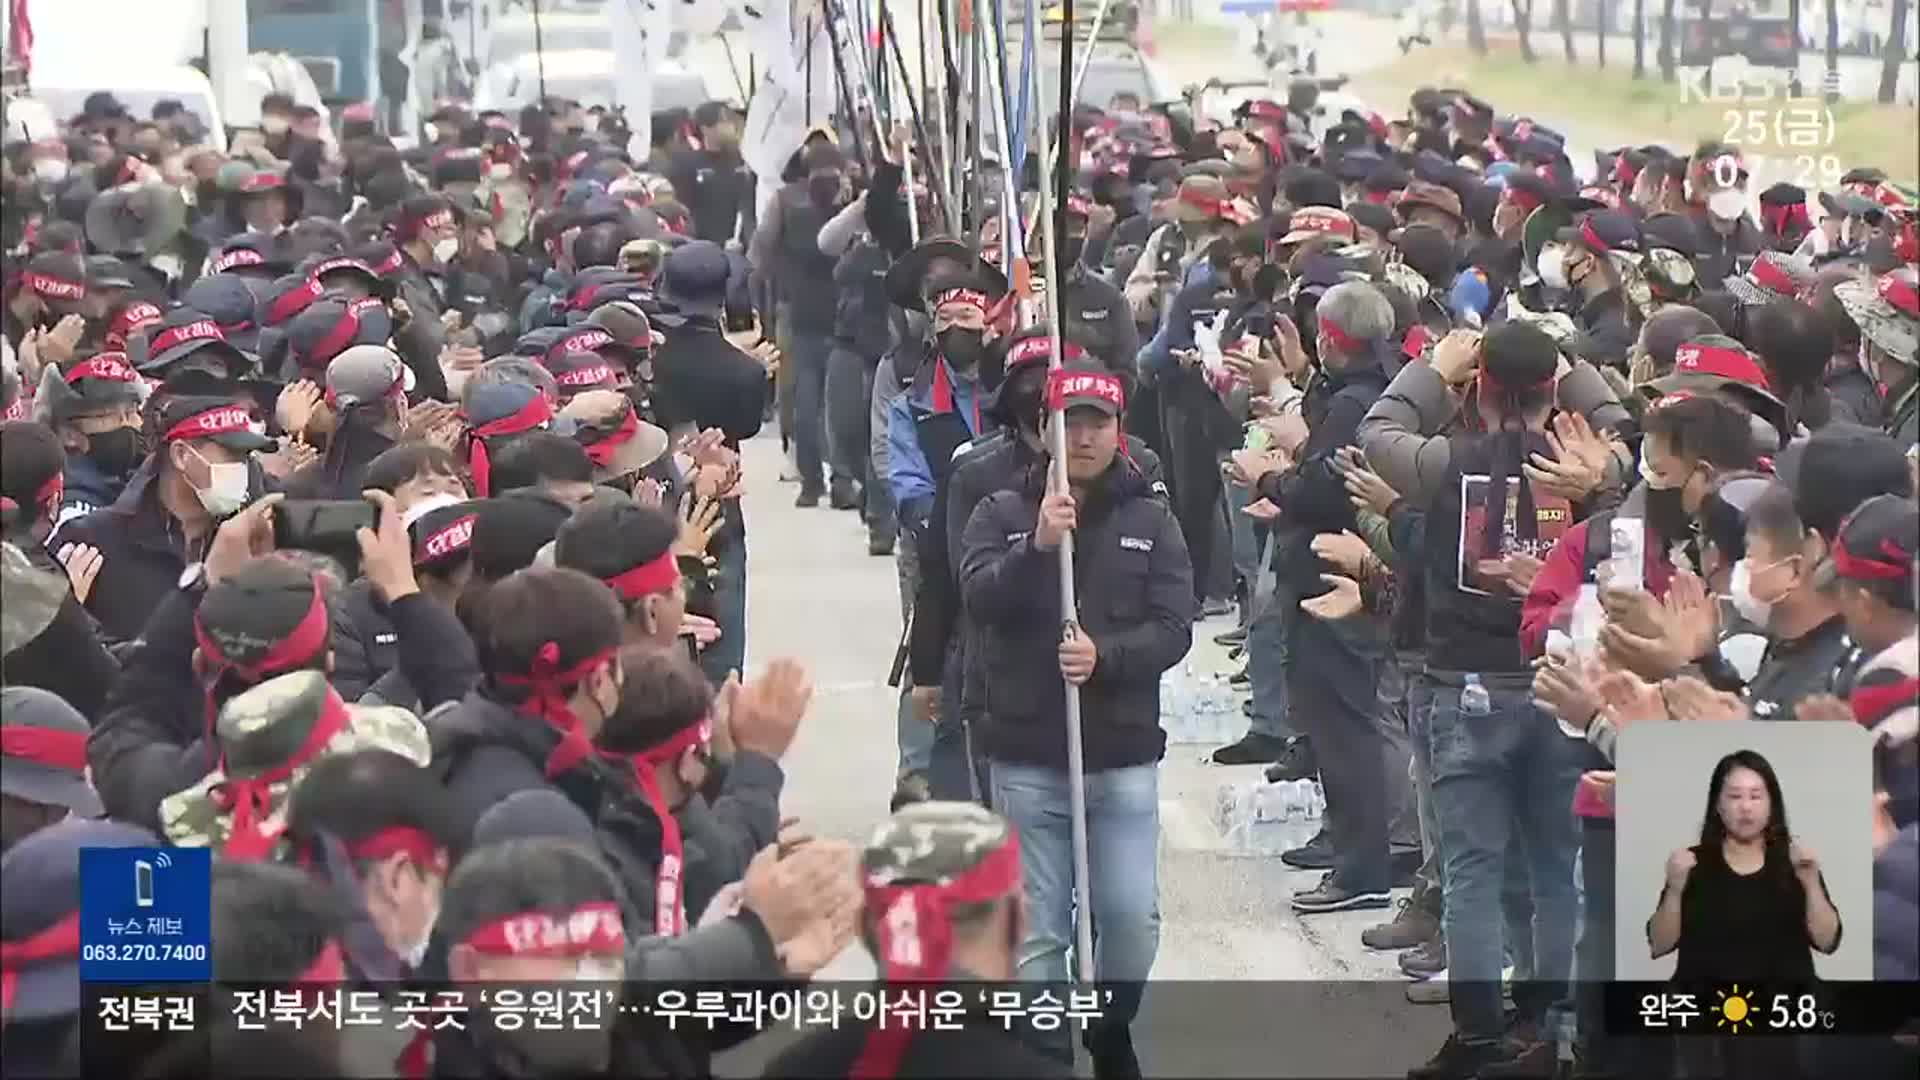 화물연대 다시 파업…전북에서도 2천 대 참가